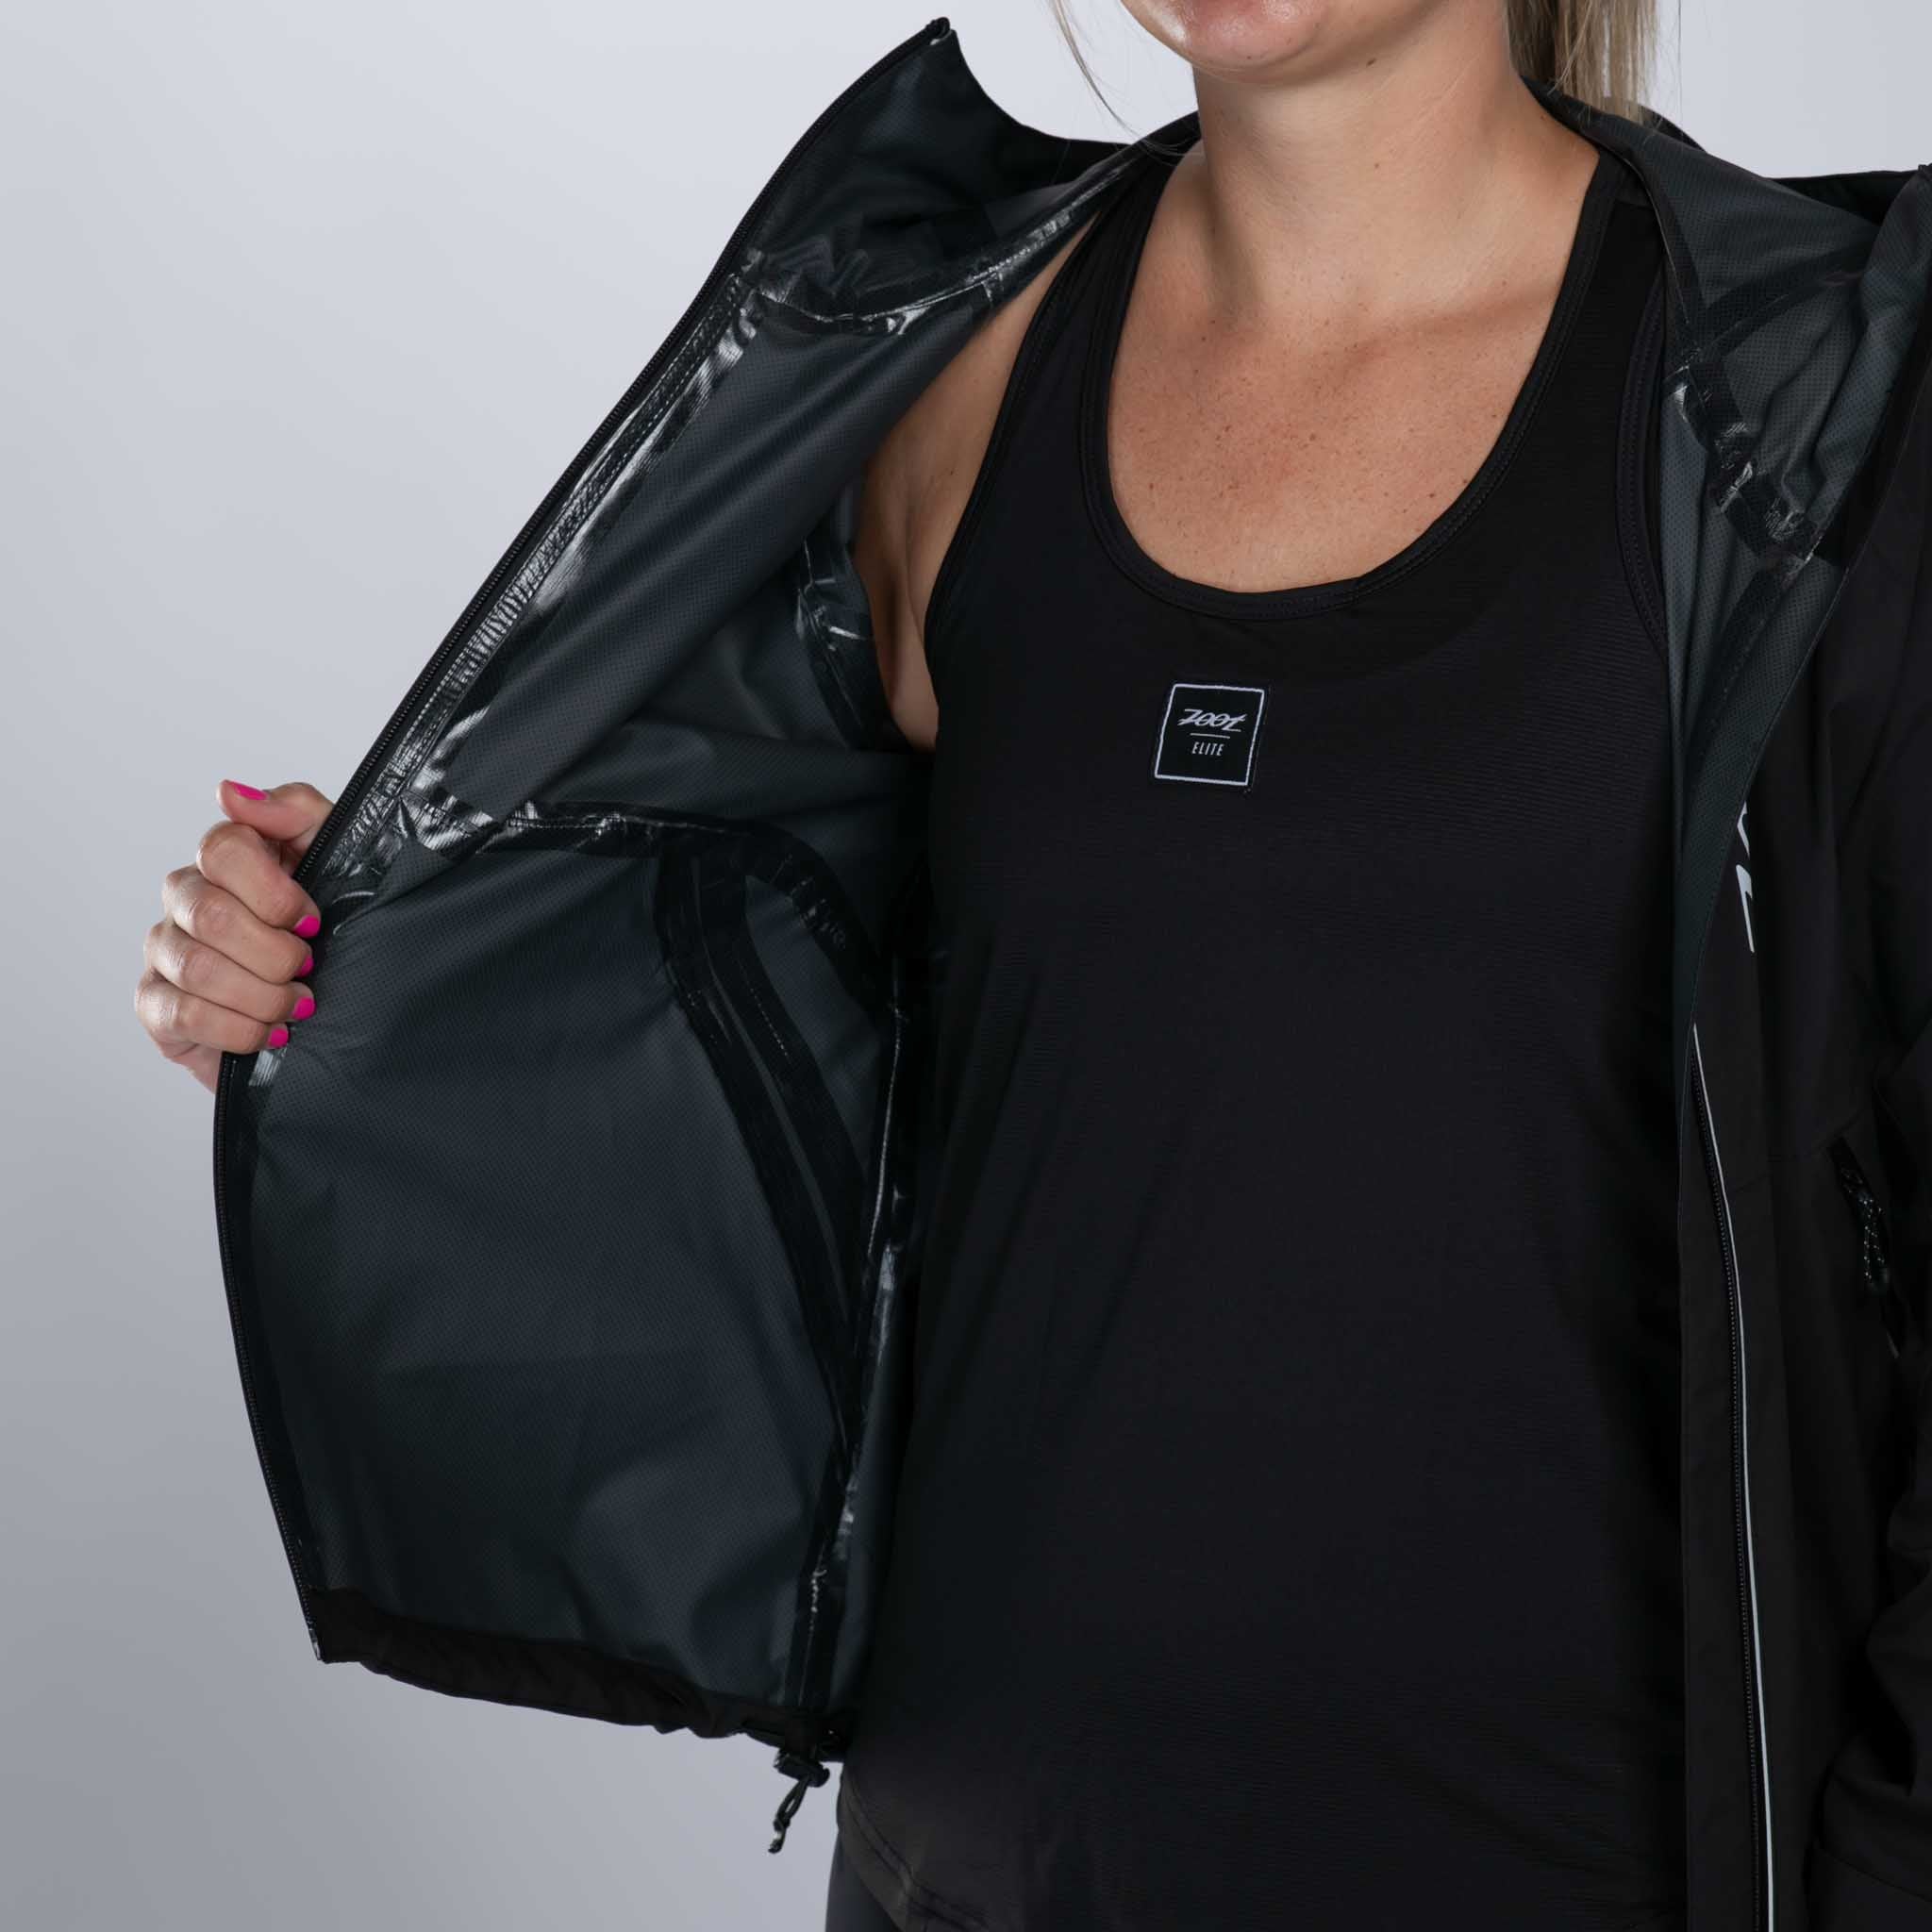 Zoot Sports OUTERWEAR Women's Elite Waterproof Jacket - Black